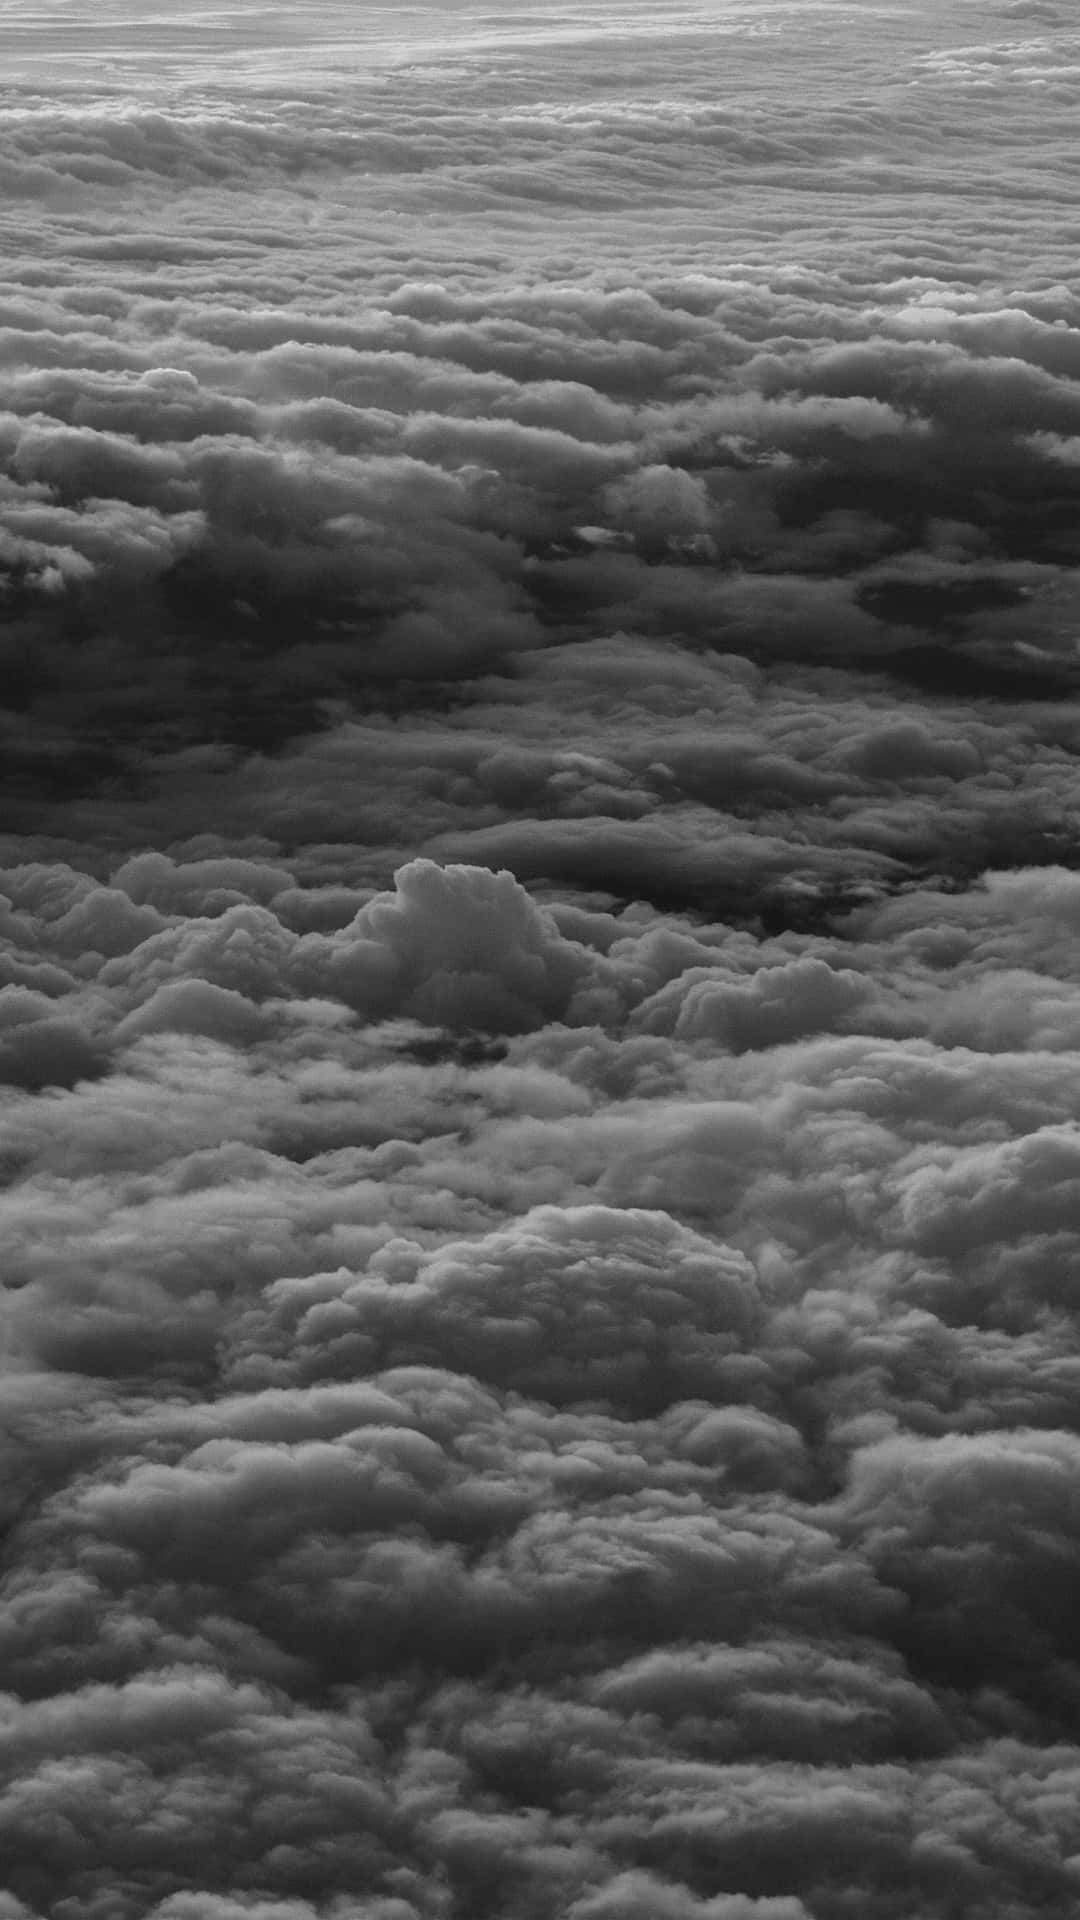 Einbedrohlicher Himmel Voller Dunkler Wolken Zieht Sich Vor Uns Zusammen. Wallpaper